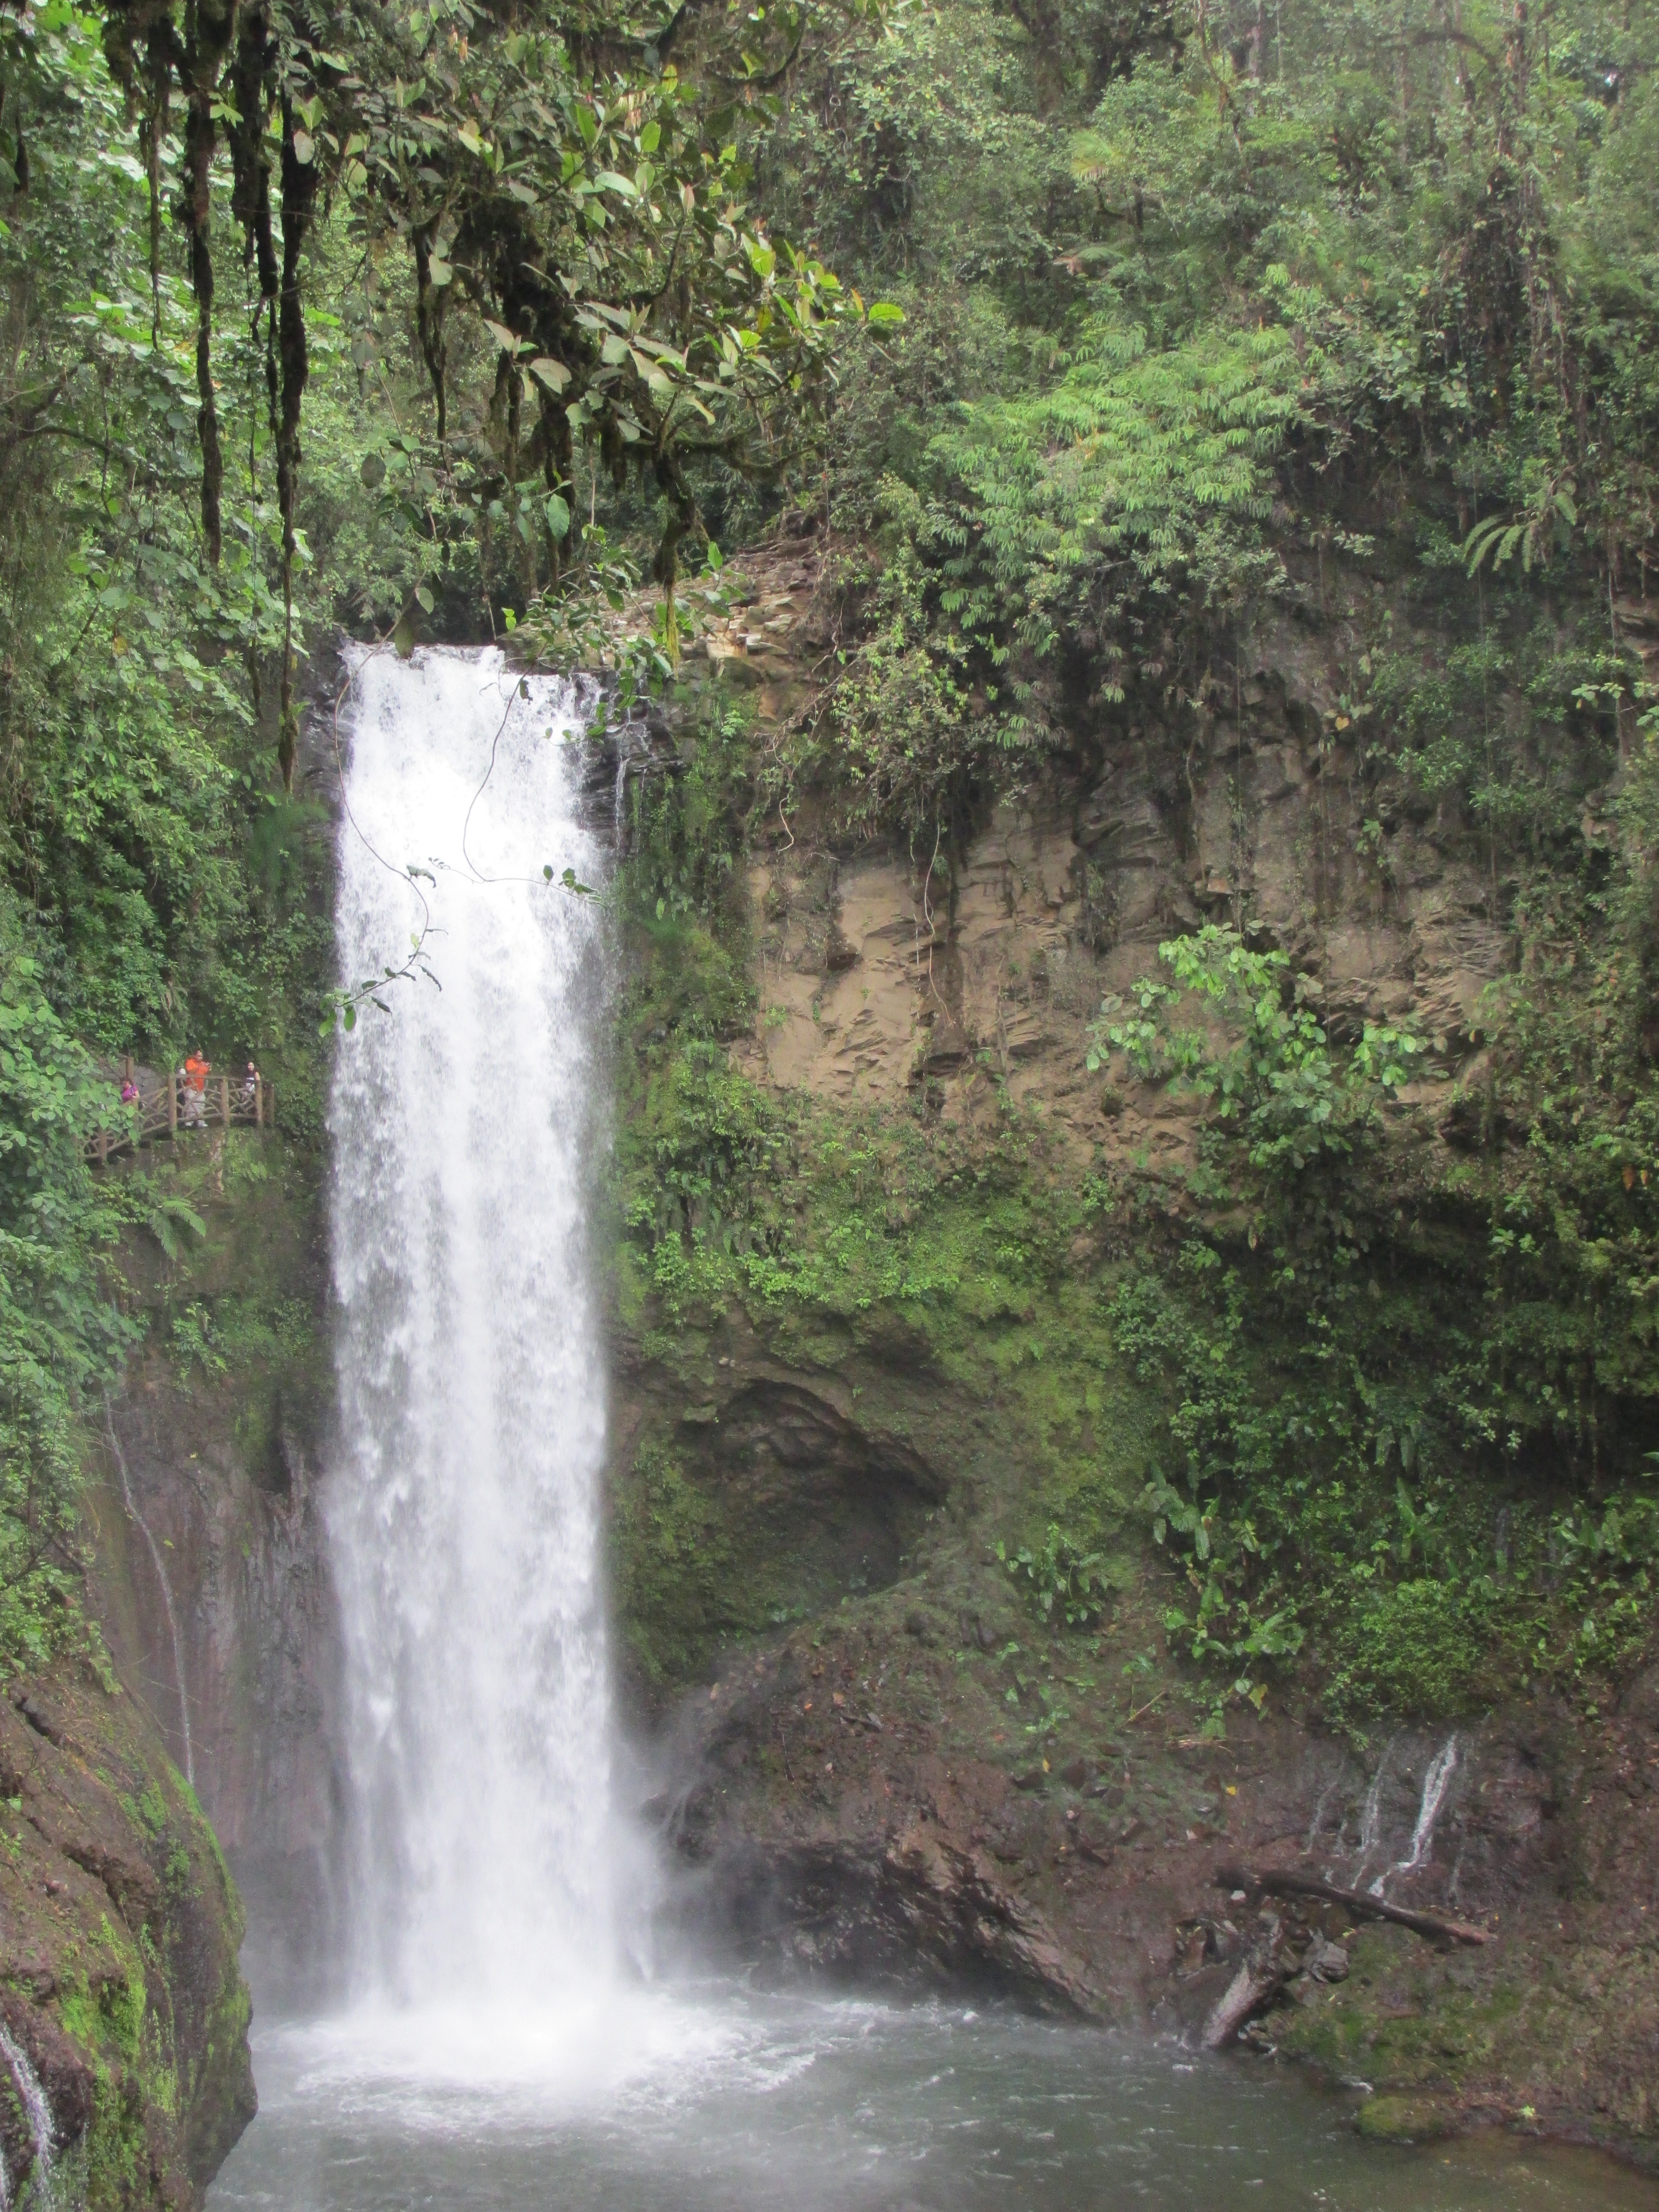 Pura Vida – Page 2 – My adventures and encounters in Costa Rica